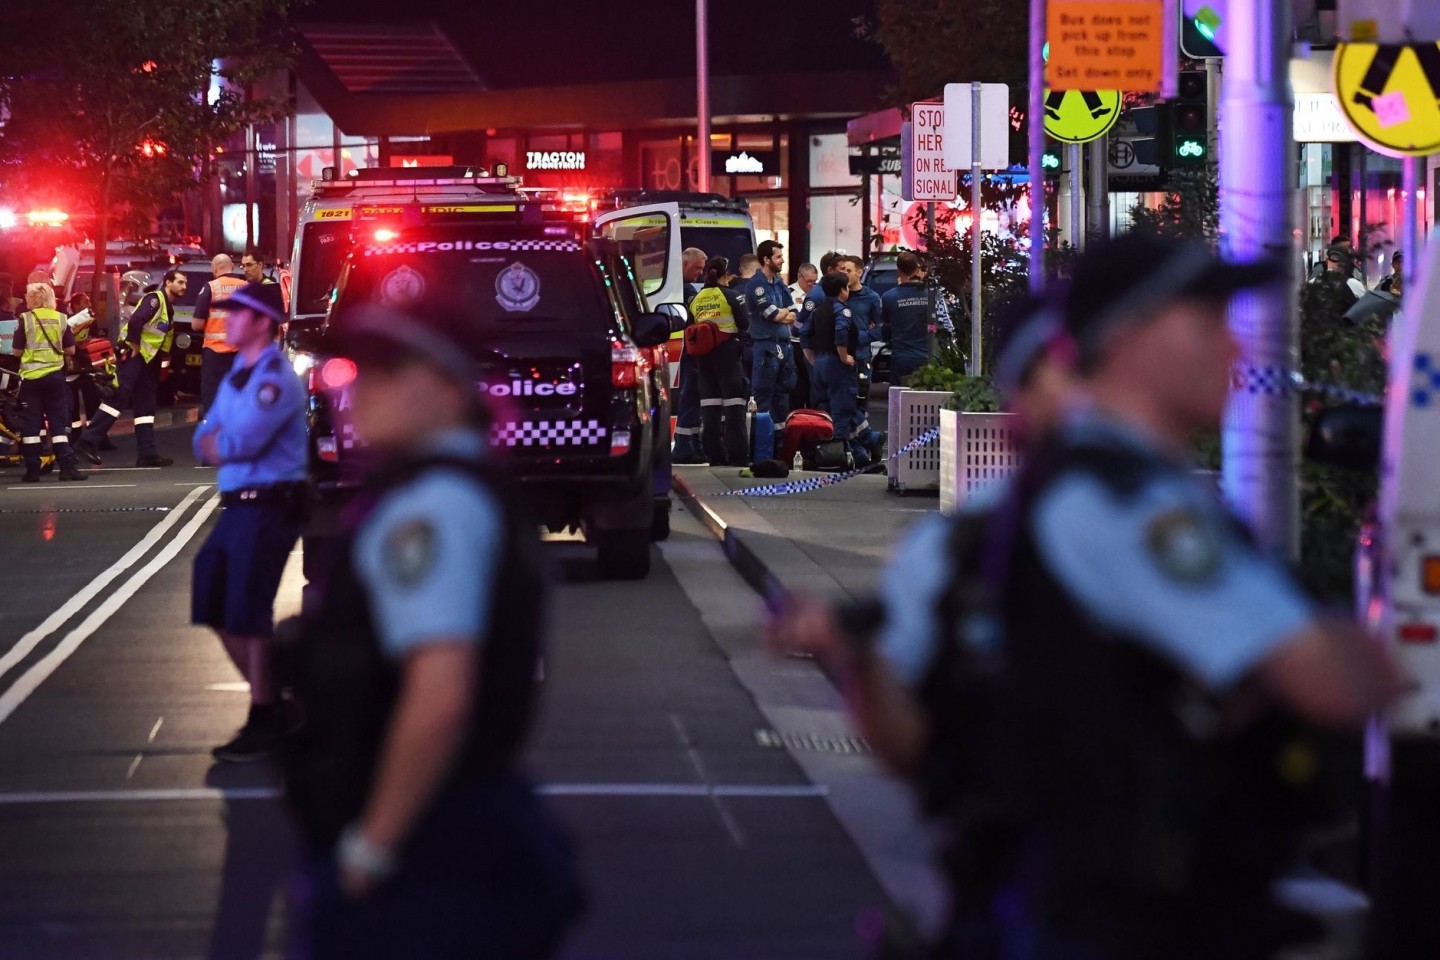 Rettungskräfte sind an der Bondi Junction zu sehen, nachdem mehrere Menschen in dem Einkaufszentrum in Sydney niedergestochen wurden.